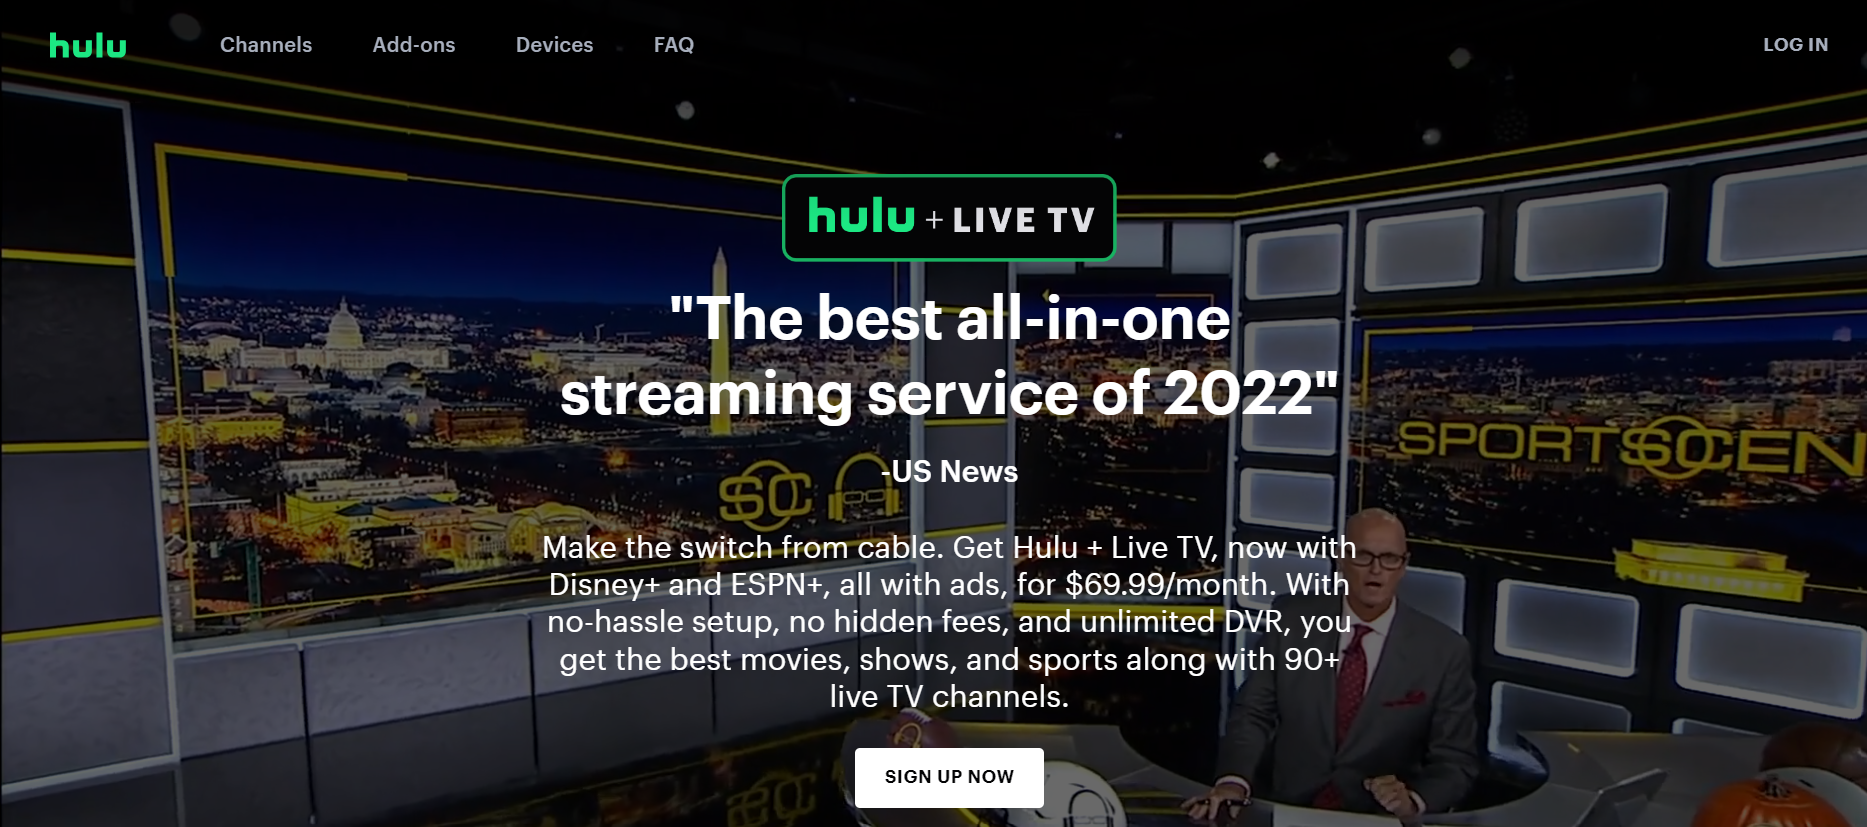 NBA Live Stream on Hulu + Live TV